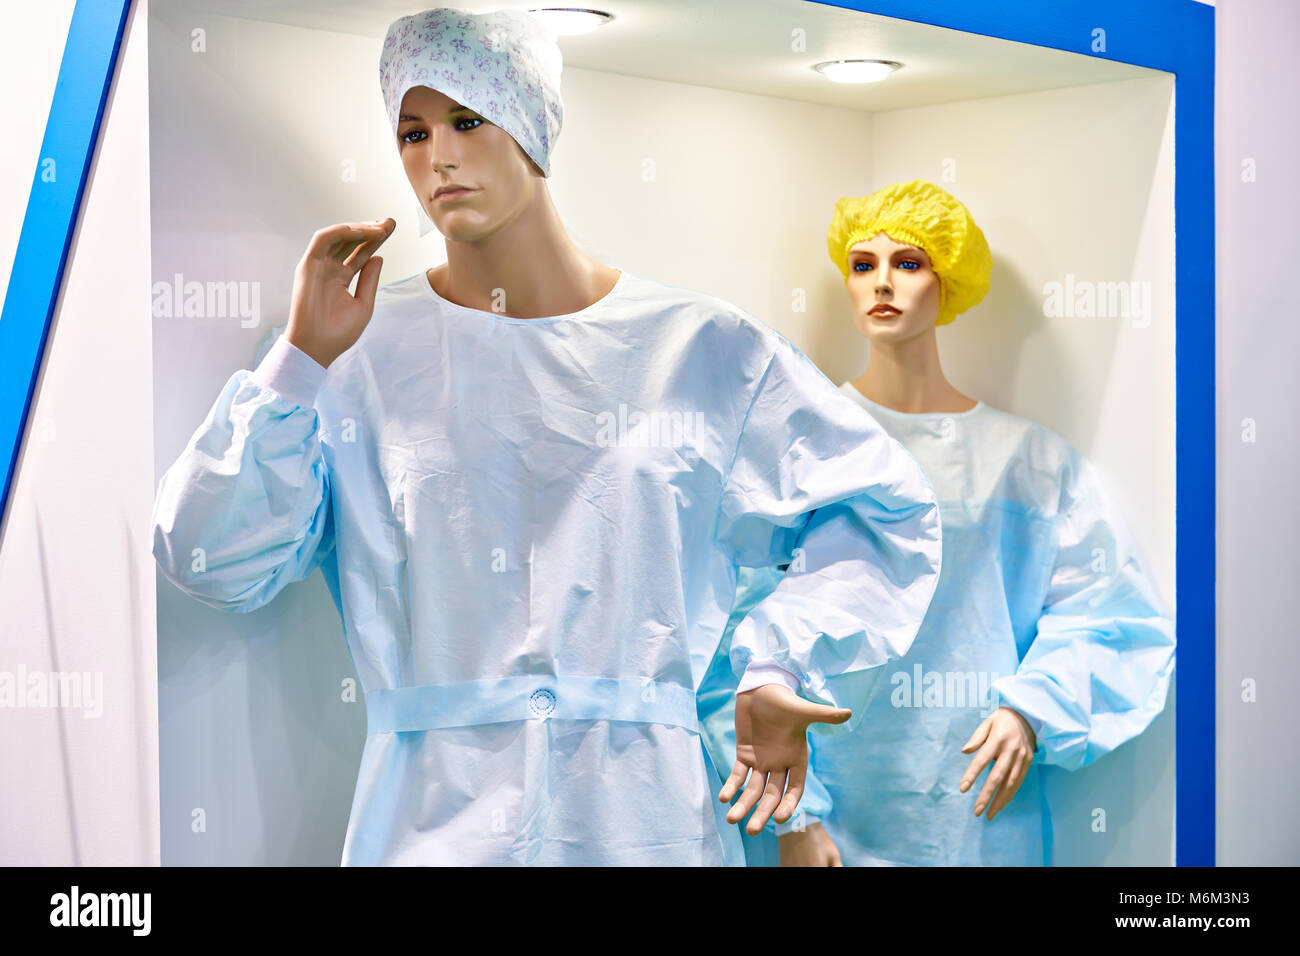 Les Mannequins homme et femme en blouse de chirurgien en magasin Banque D'Images